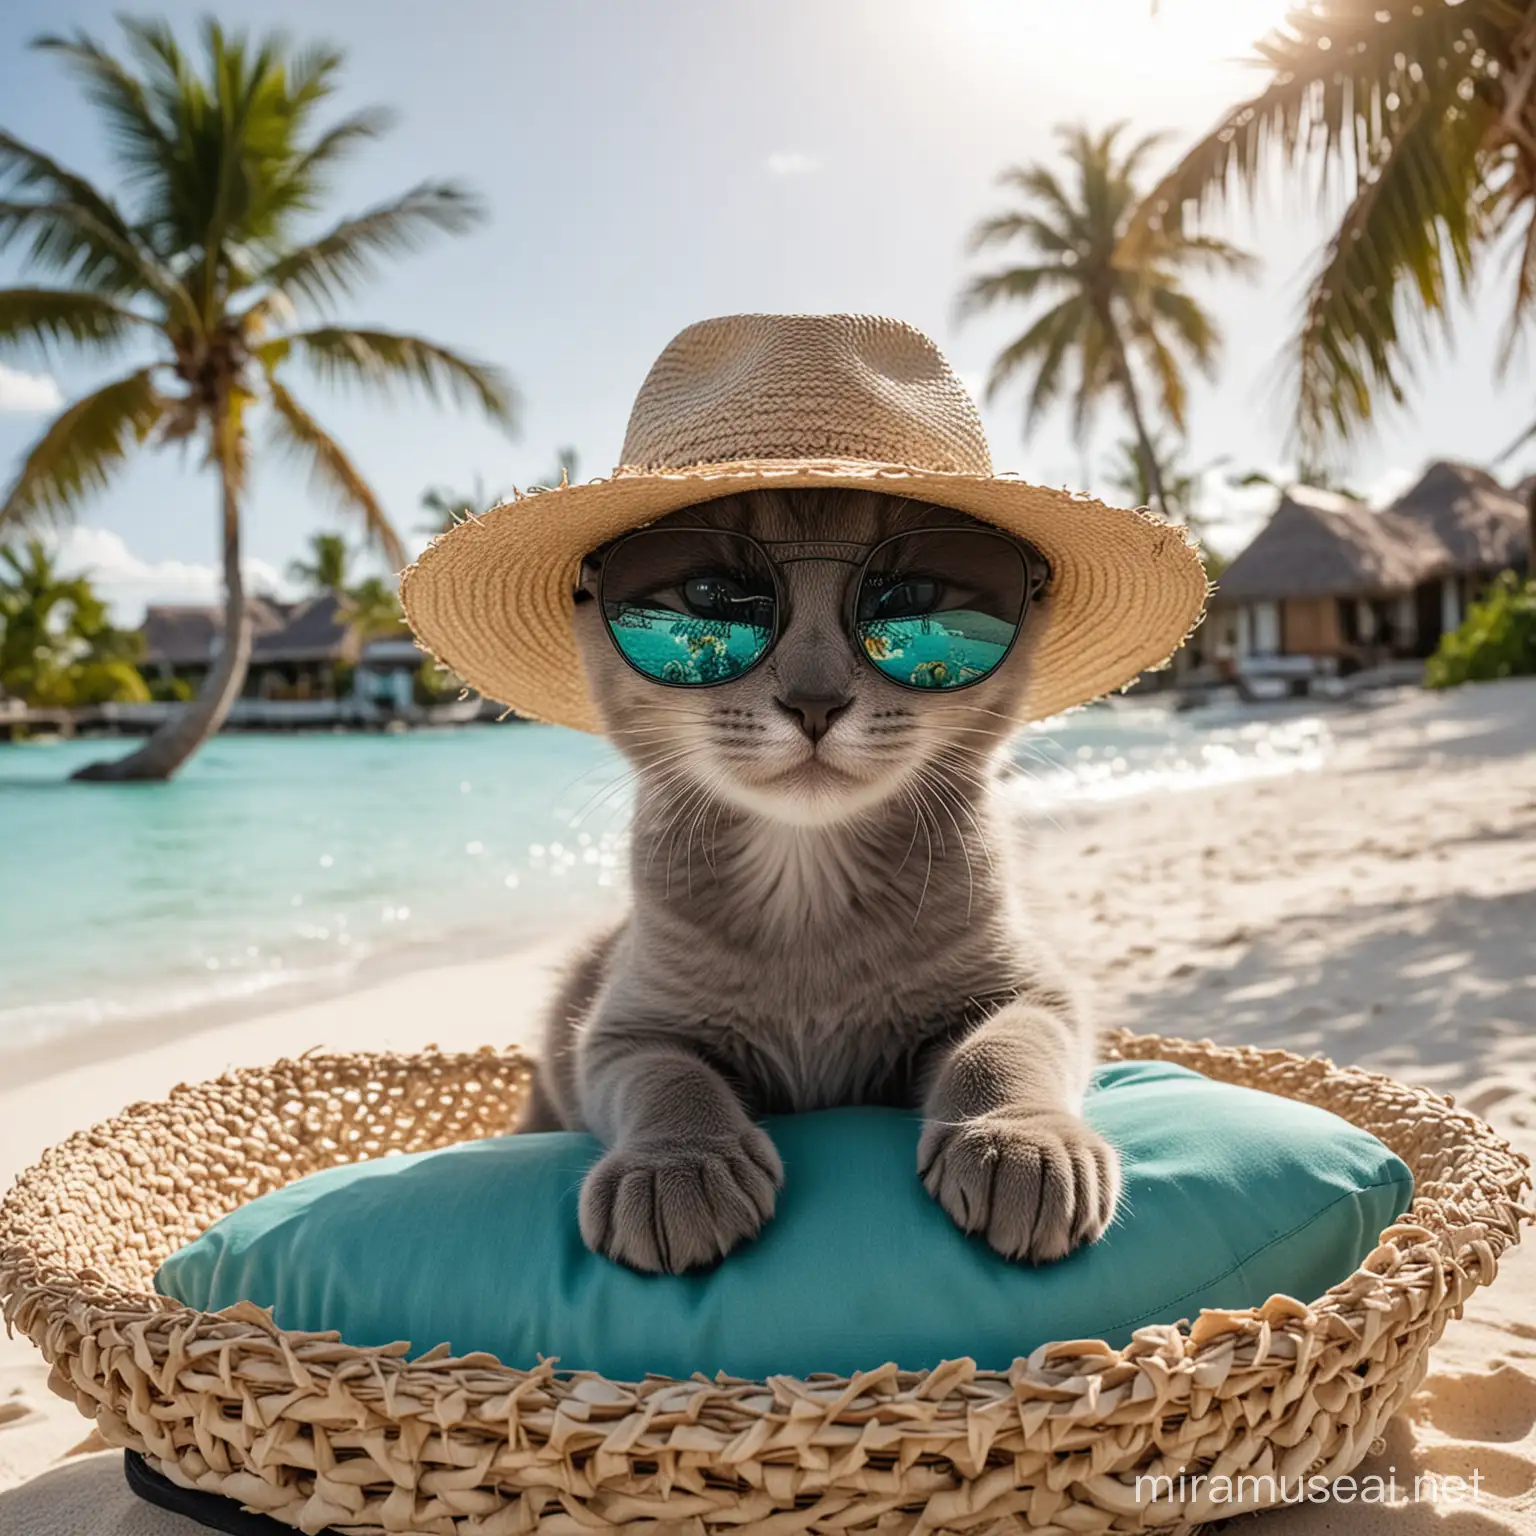 котенок темно серого цвета бурманской породы в соломенной шляпе на морде у котенка солнцезащитные очки с линзами черного цвета на очках написано WMW 

котёнок лежит на райском пляже на шезлонге на мальдивах вокруг него идеальный белый песок вокруг него море и волны бирюзового цвета вокруг него пальмы 

на фоне шикарный невероятный лучший отель на мальдивах 